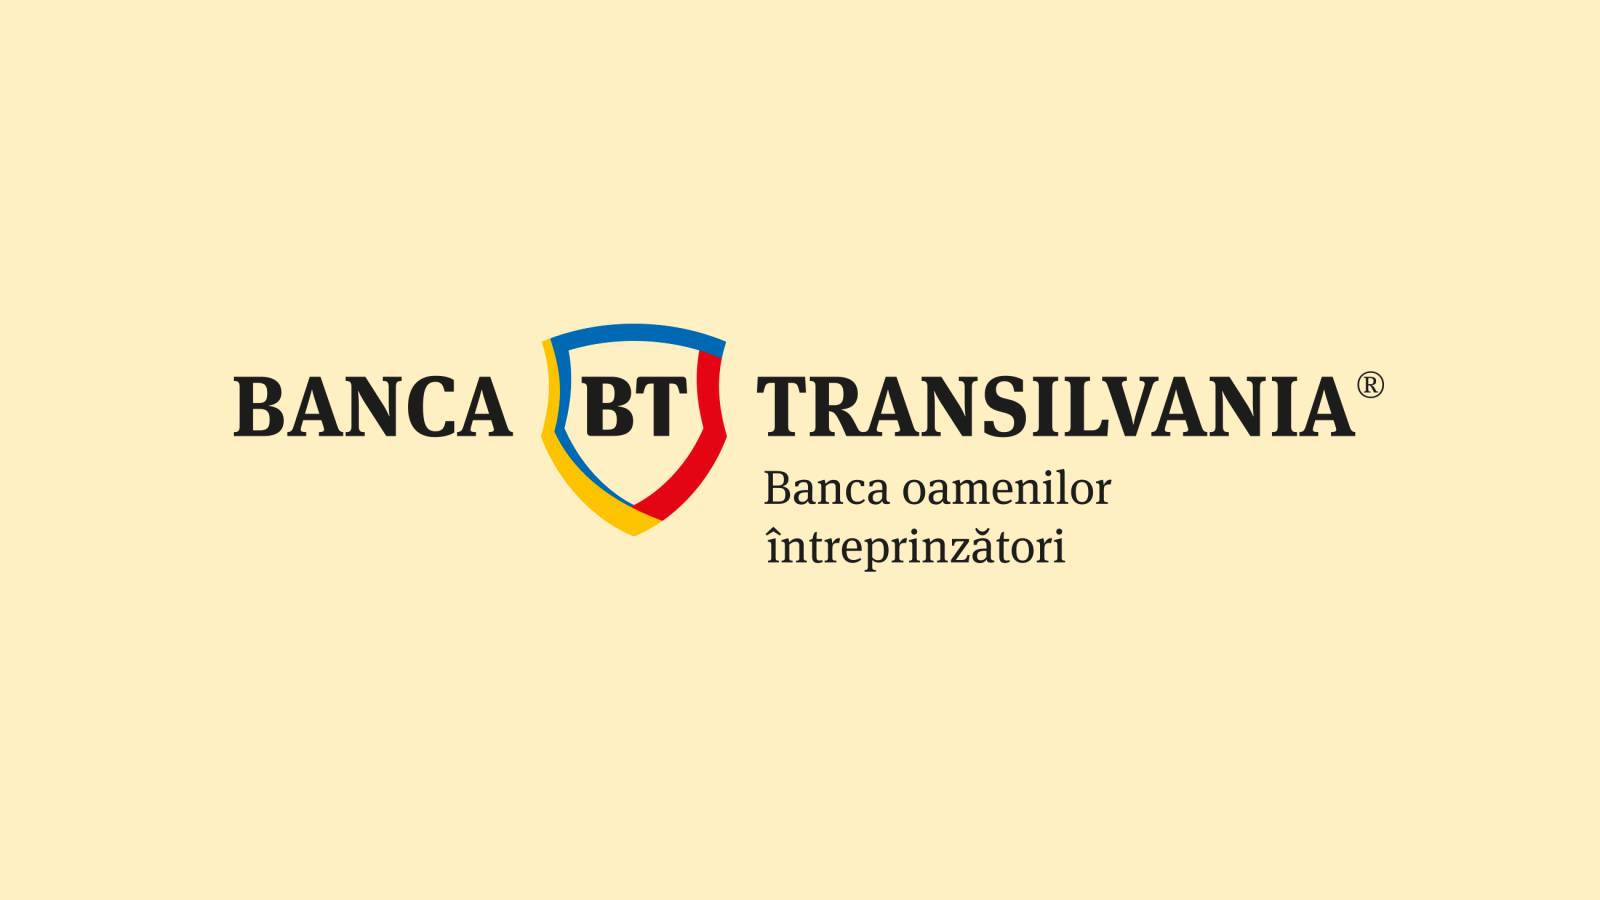 BANCA Transilvania sender officielt VIGTIG meddelelse til kunder i dag